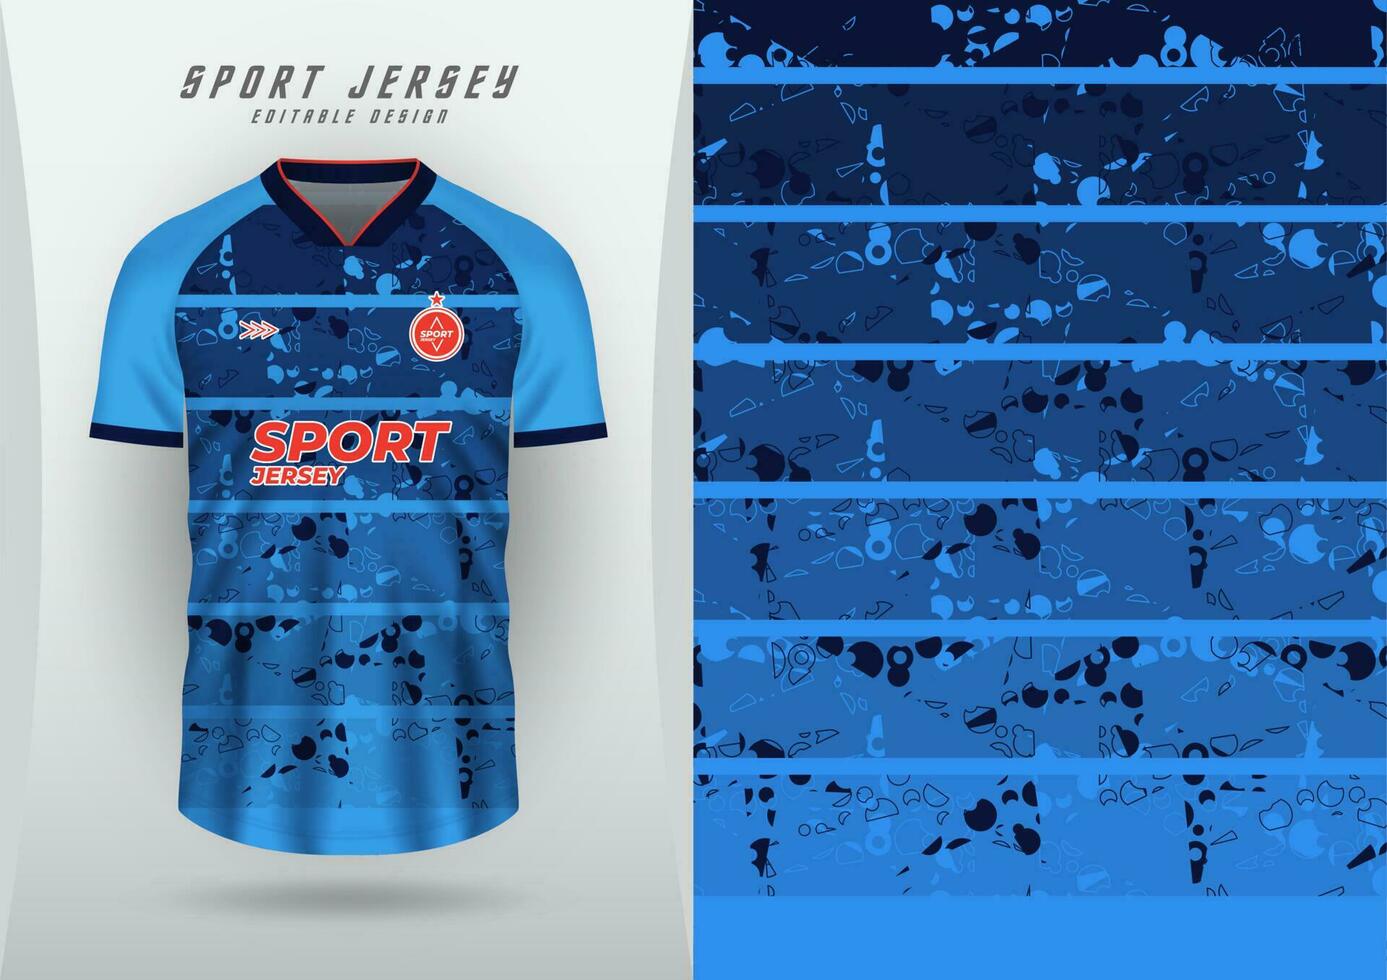 Hintergrund zum Sport Jersey, Fußball Jersey, Laufen Jersey, Rennen Jersey, dunkel Blau Muster mit Design. vektor